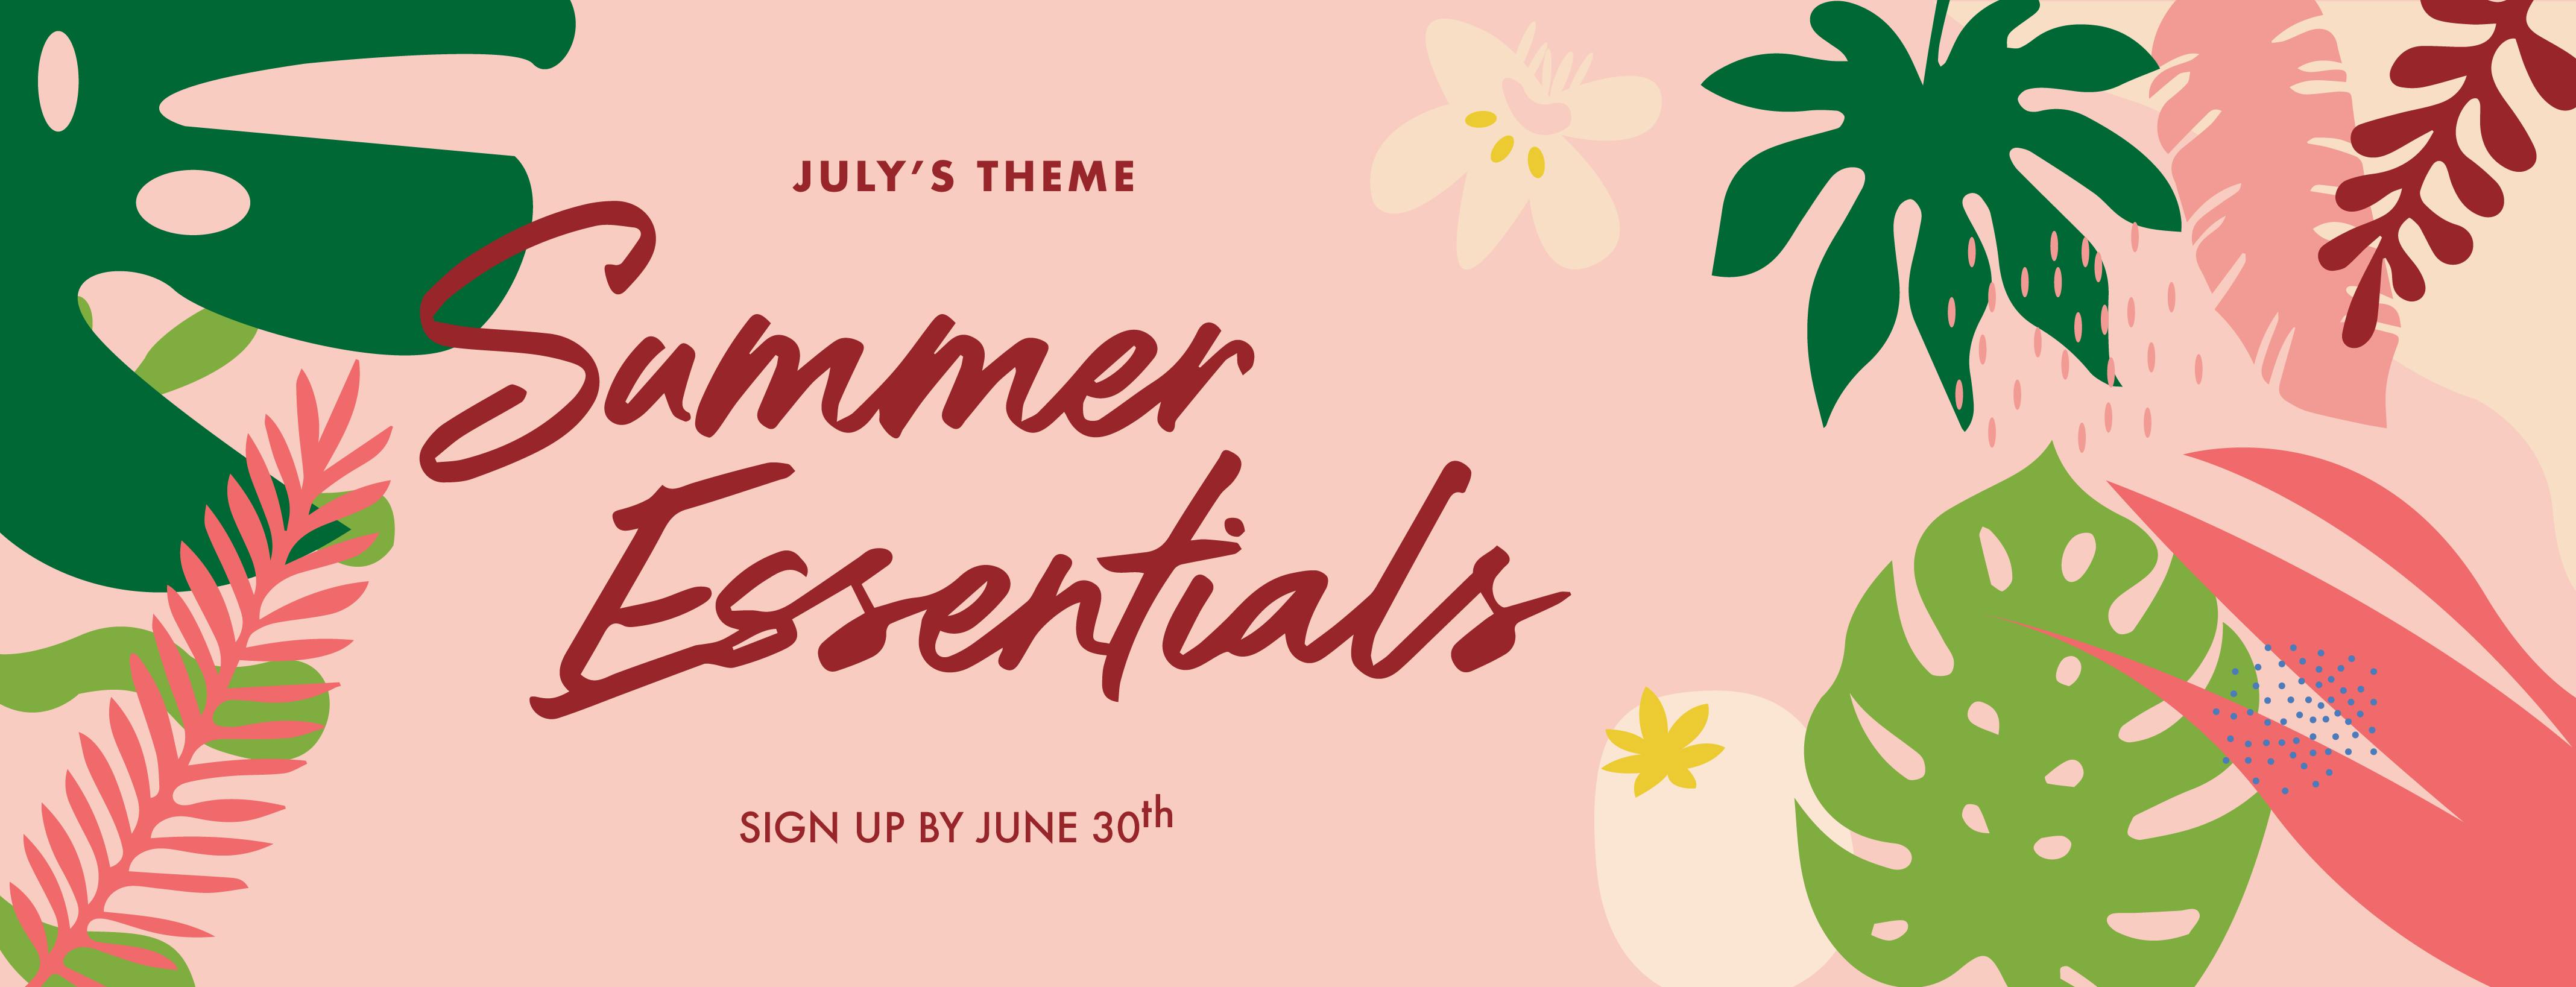 nomakenolife july box theme summer essentials